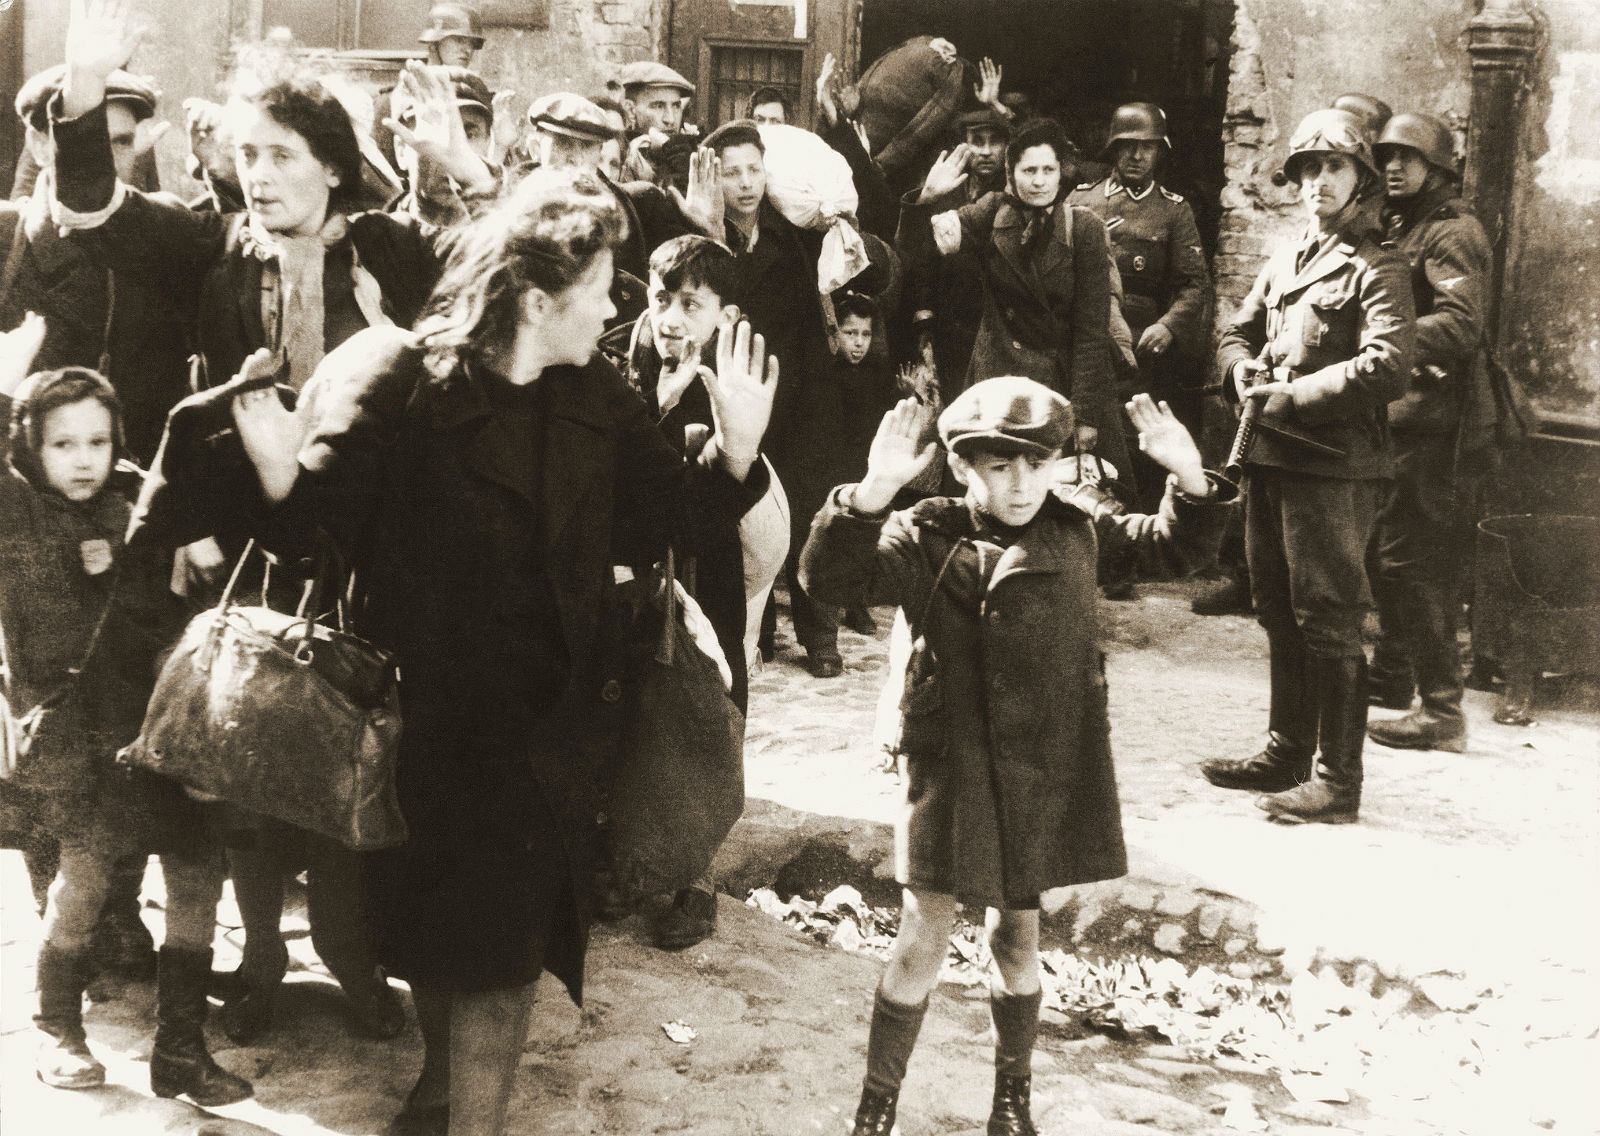 1943 年「華沙猶太區起義」，是年 4 月華沙區猶太人群起反抗，結果卻加速引來殺戮。照片取自 1943 年 5 月親衛隊提交給希姆萊的報告。　圖片來源：wikimedia